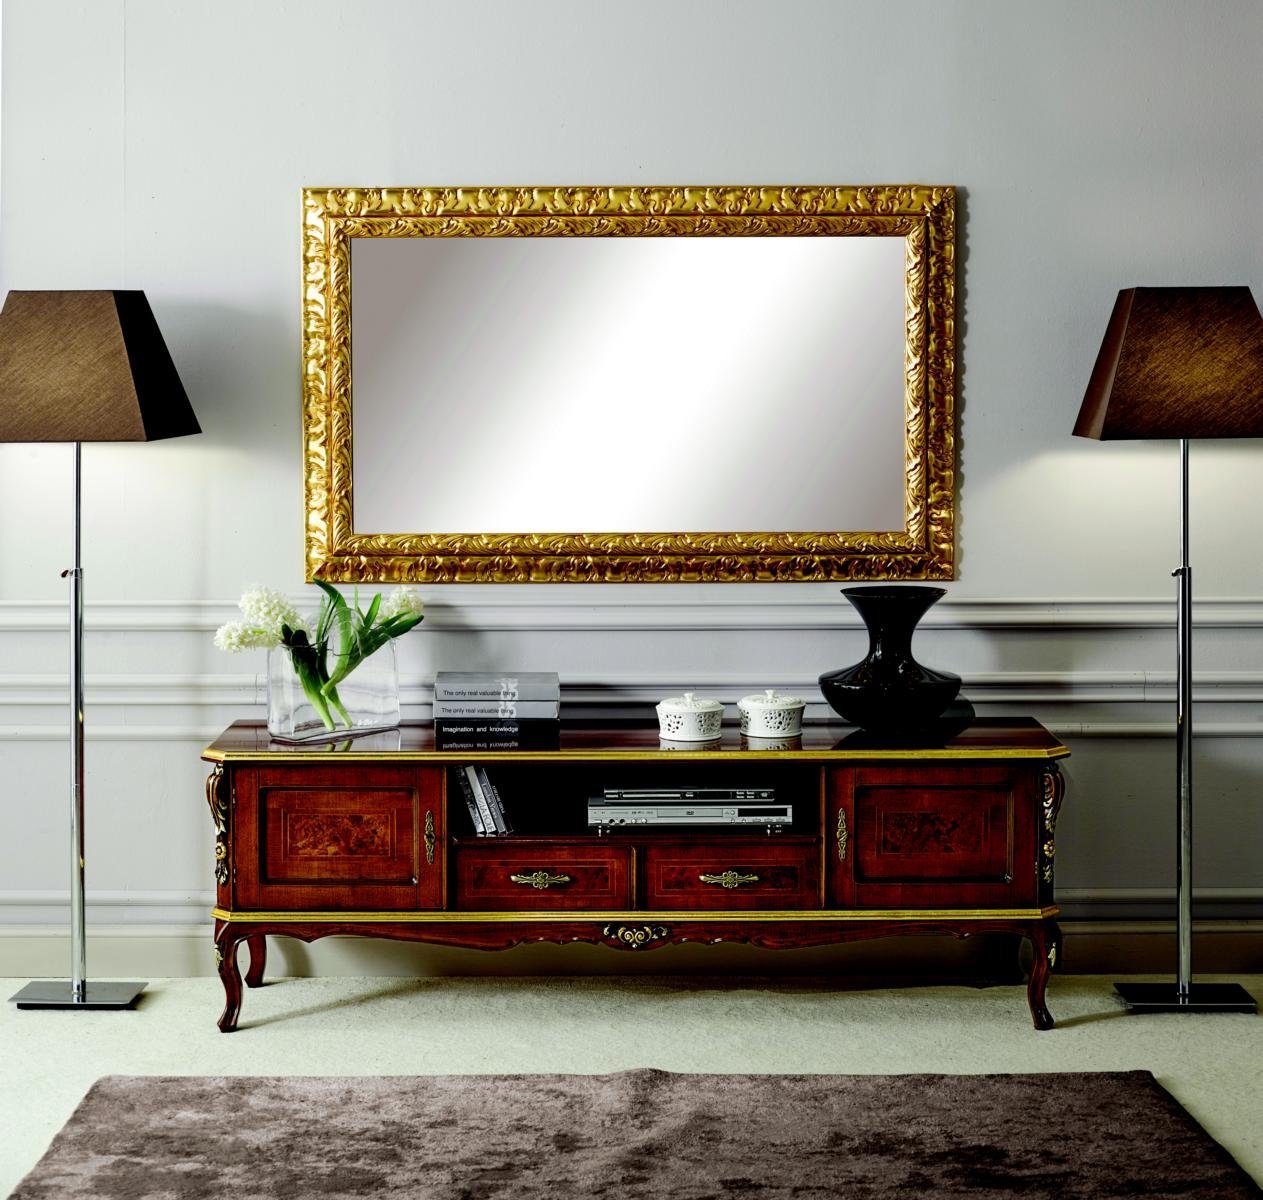 JVmoebel Wohnzimmer-Set Luxus 2tlg Set Sideboard Lowboard rtv Spiegel Italienische Holz Möbel Holzmöbel